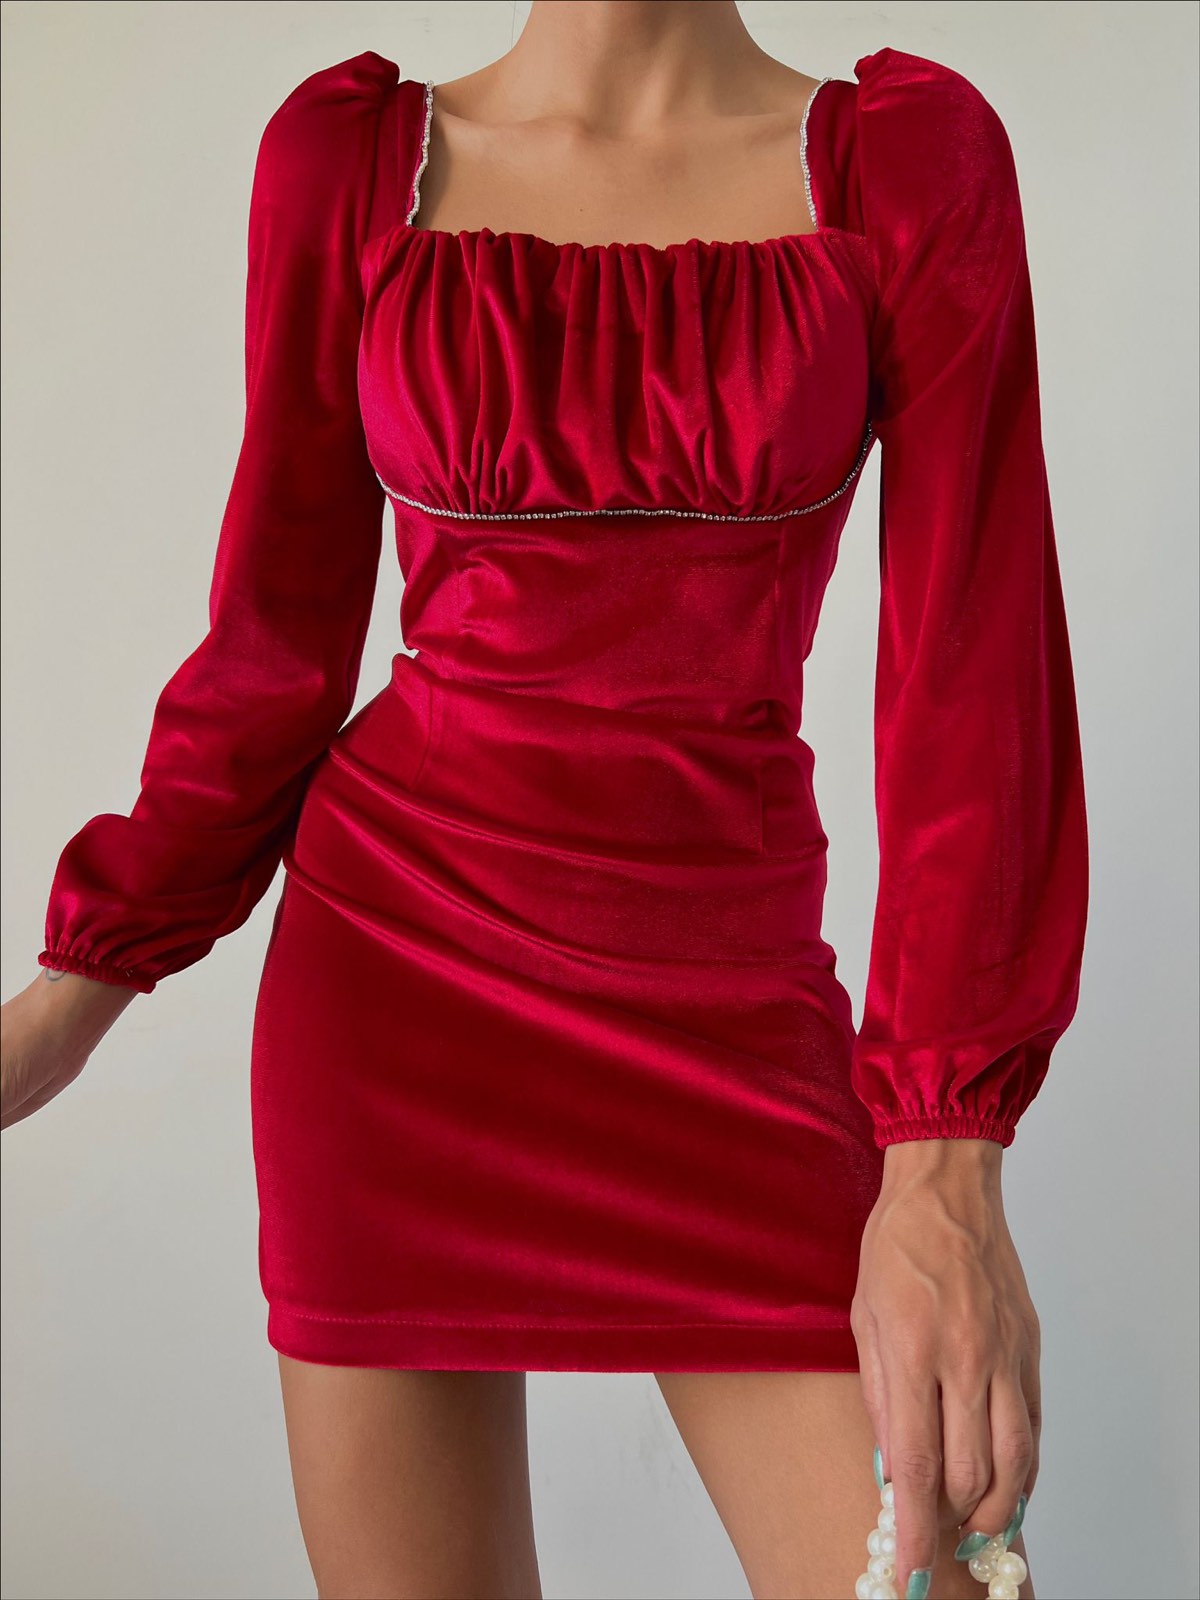 Дамска рокля VIVAN BURGUNDY  https://bvseductive.com/products/womans-s-dresses-vivan-burgundy  модерна къса рокля в цвят бордо модел с удобна кройка, който описва силуета с дълги, буфан ръкави и стилно, право деколте с удобно затваряне чрез цип отзад ....